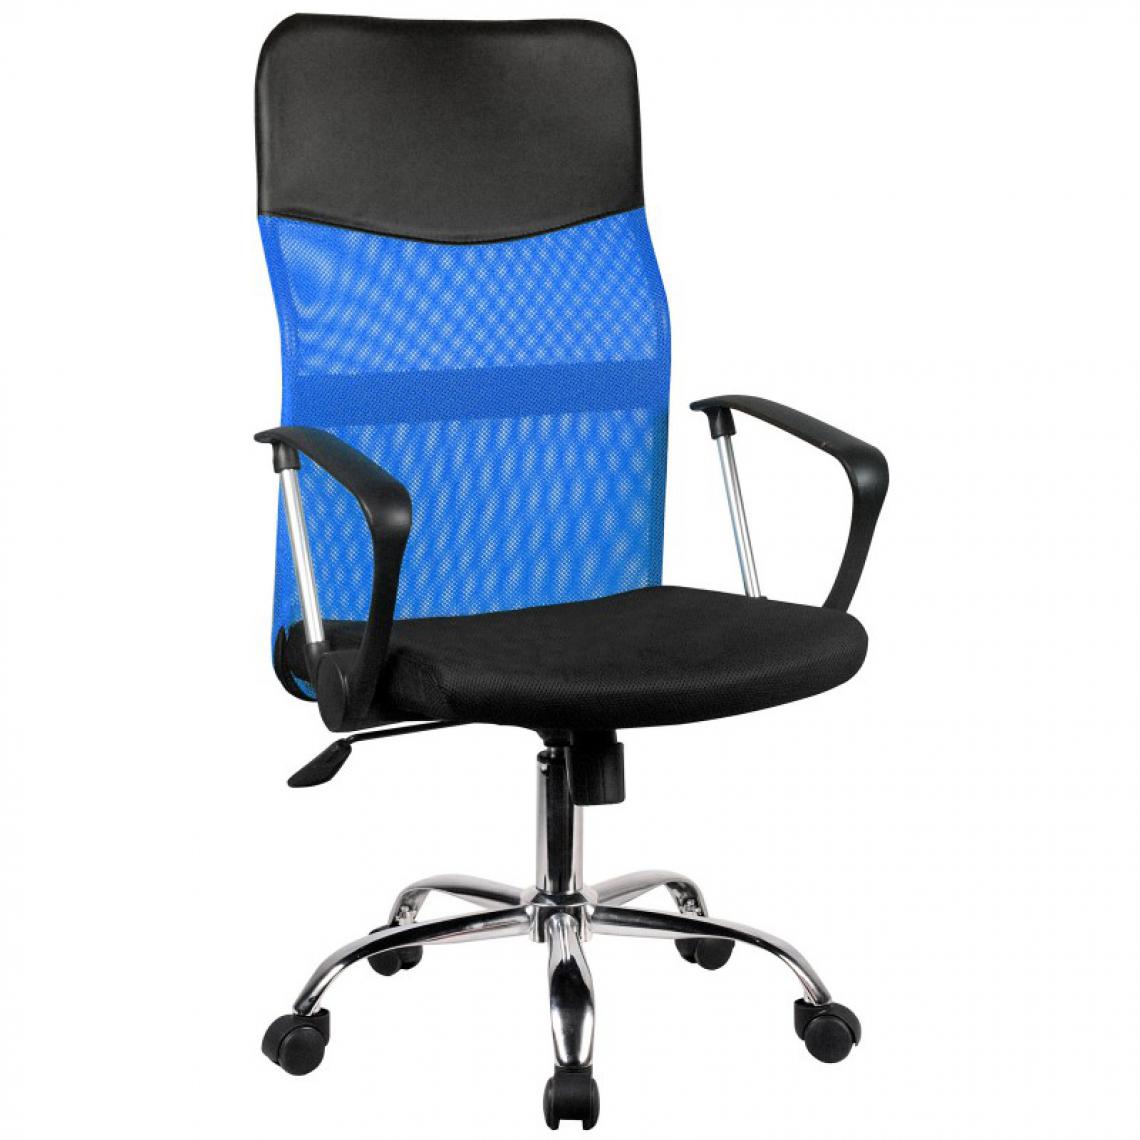 Hucoco - TANJE - Chaise de bureau pivotante - Hauteur ajustable 105-115cm - Fauteuil pivotant - Dossier ergonomique en Mesh - Bleu - Chaises